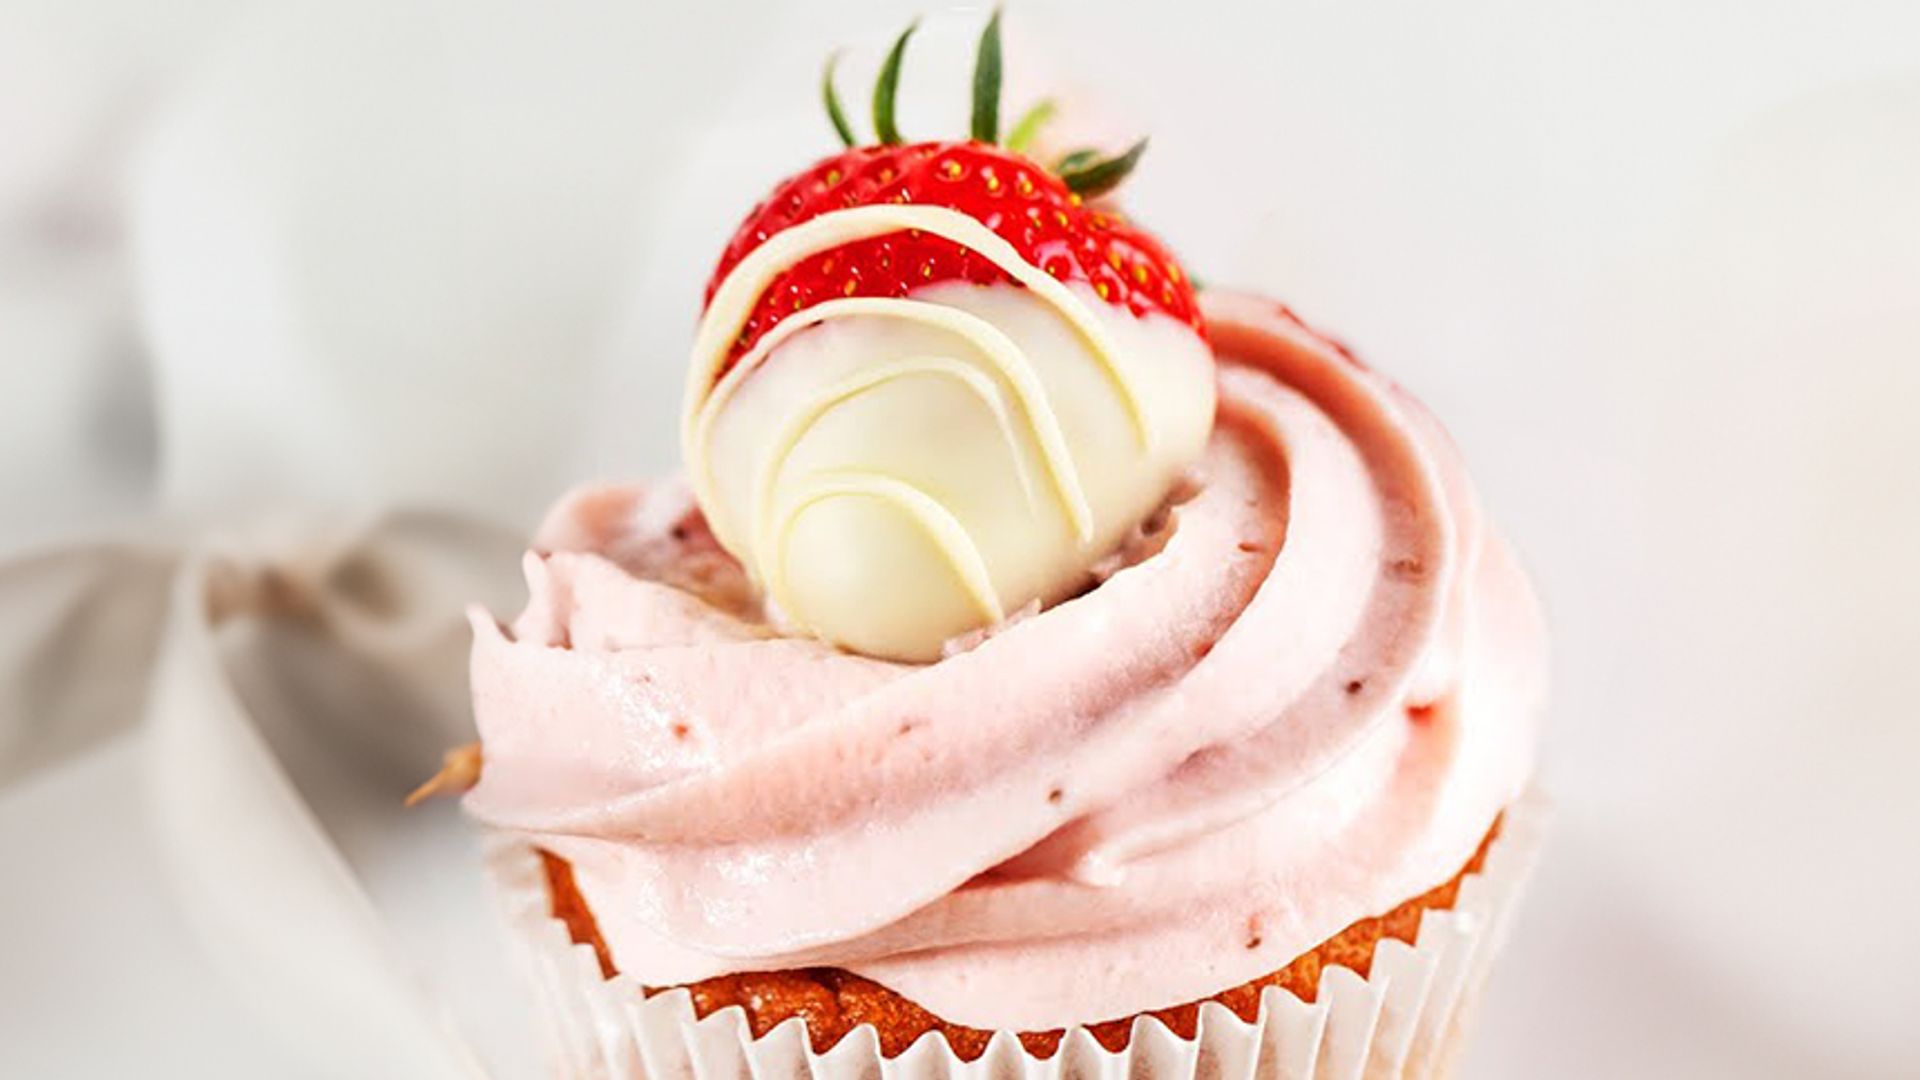 Erdbeer Cupcakes - einfaches Rezept mit fruchtiger Füllung (3 versch. Dekoration)